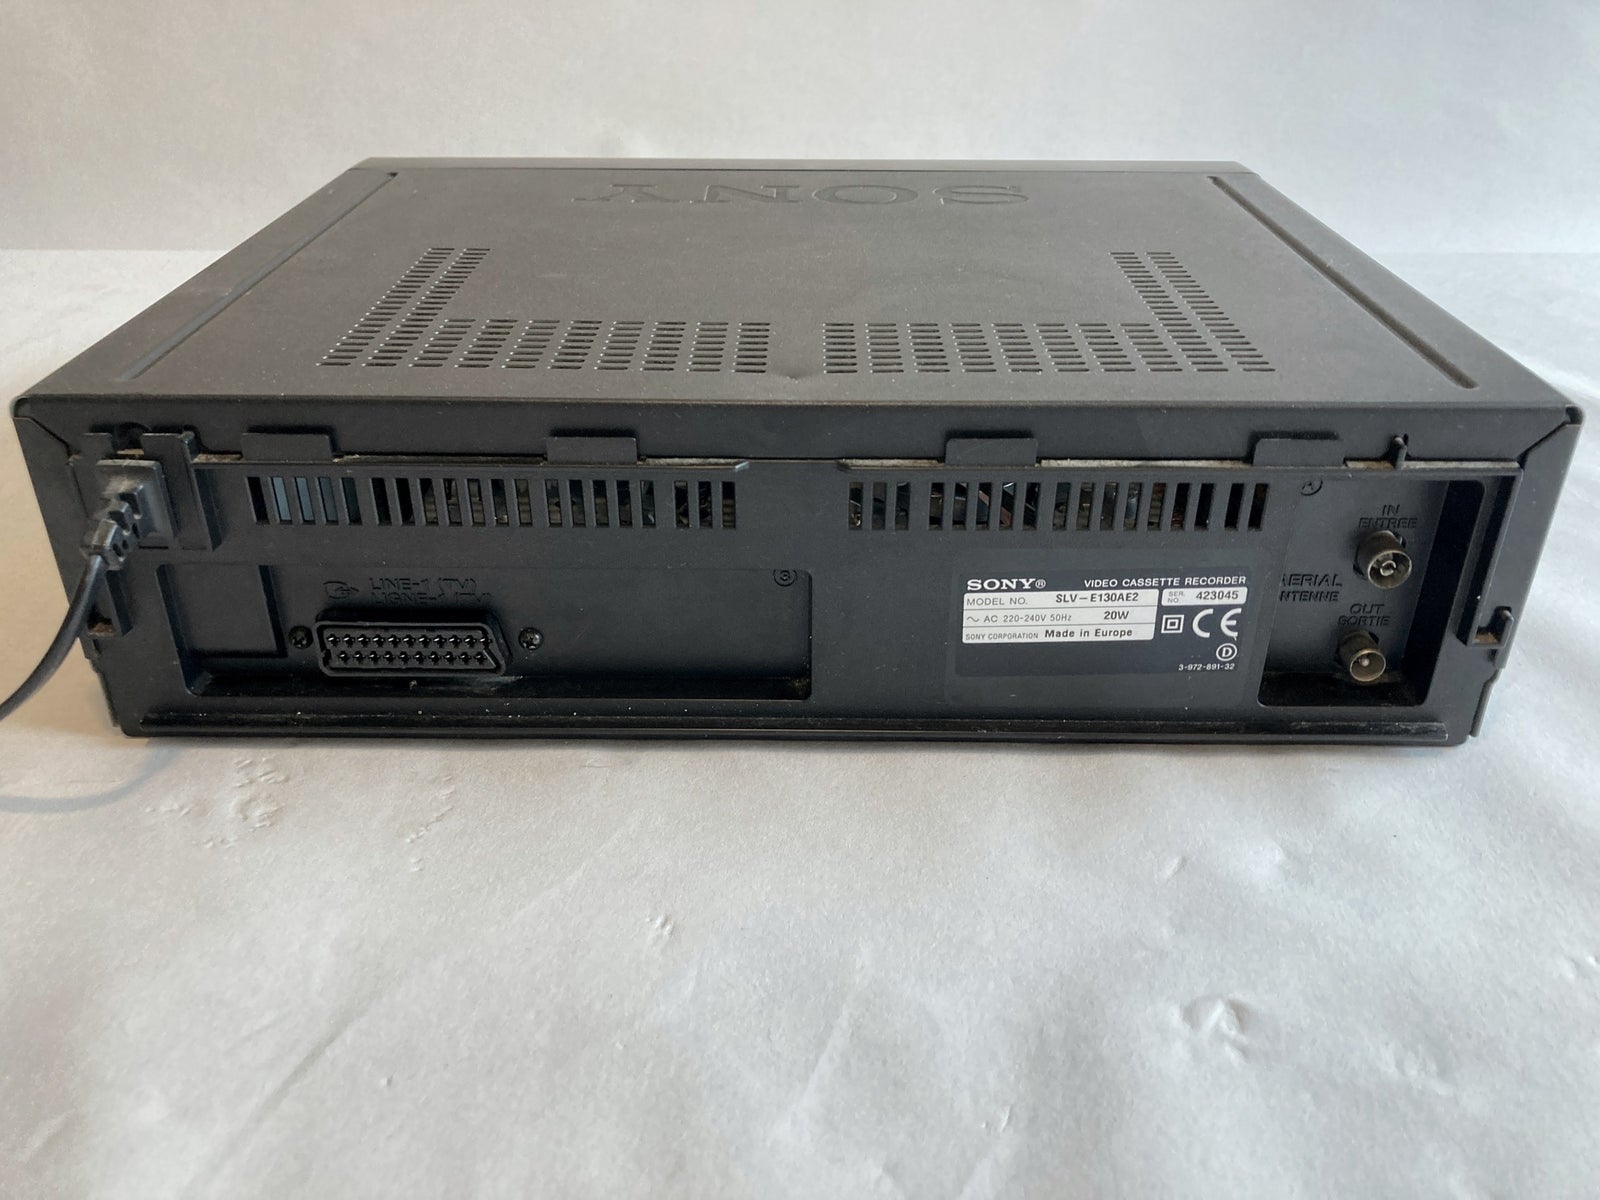 VHS videomaskine, Sony, SLV-E130